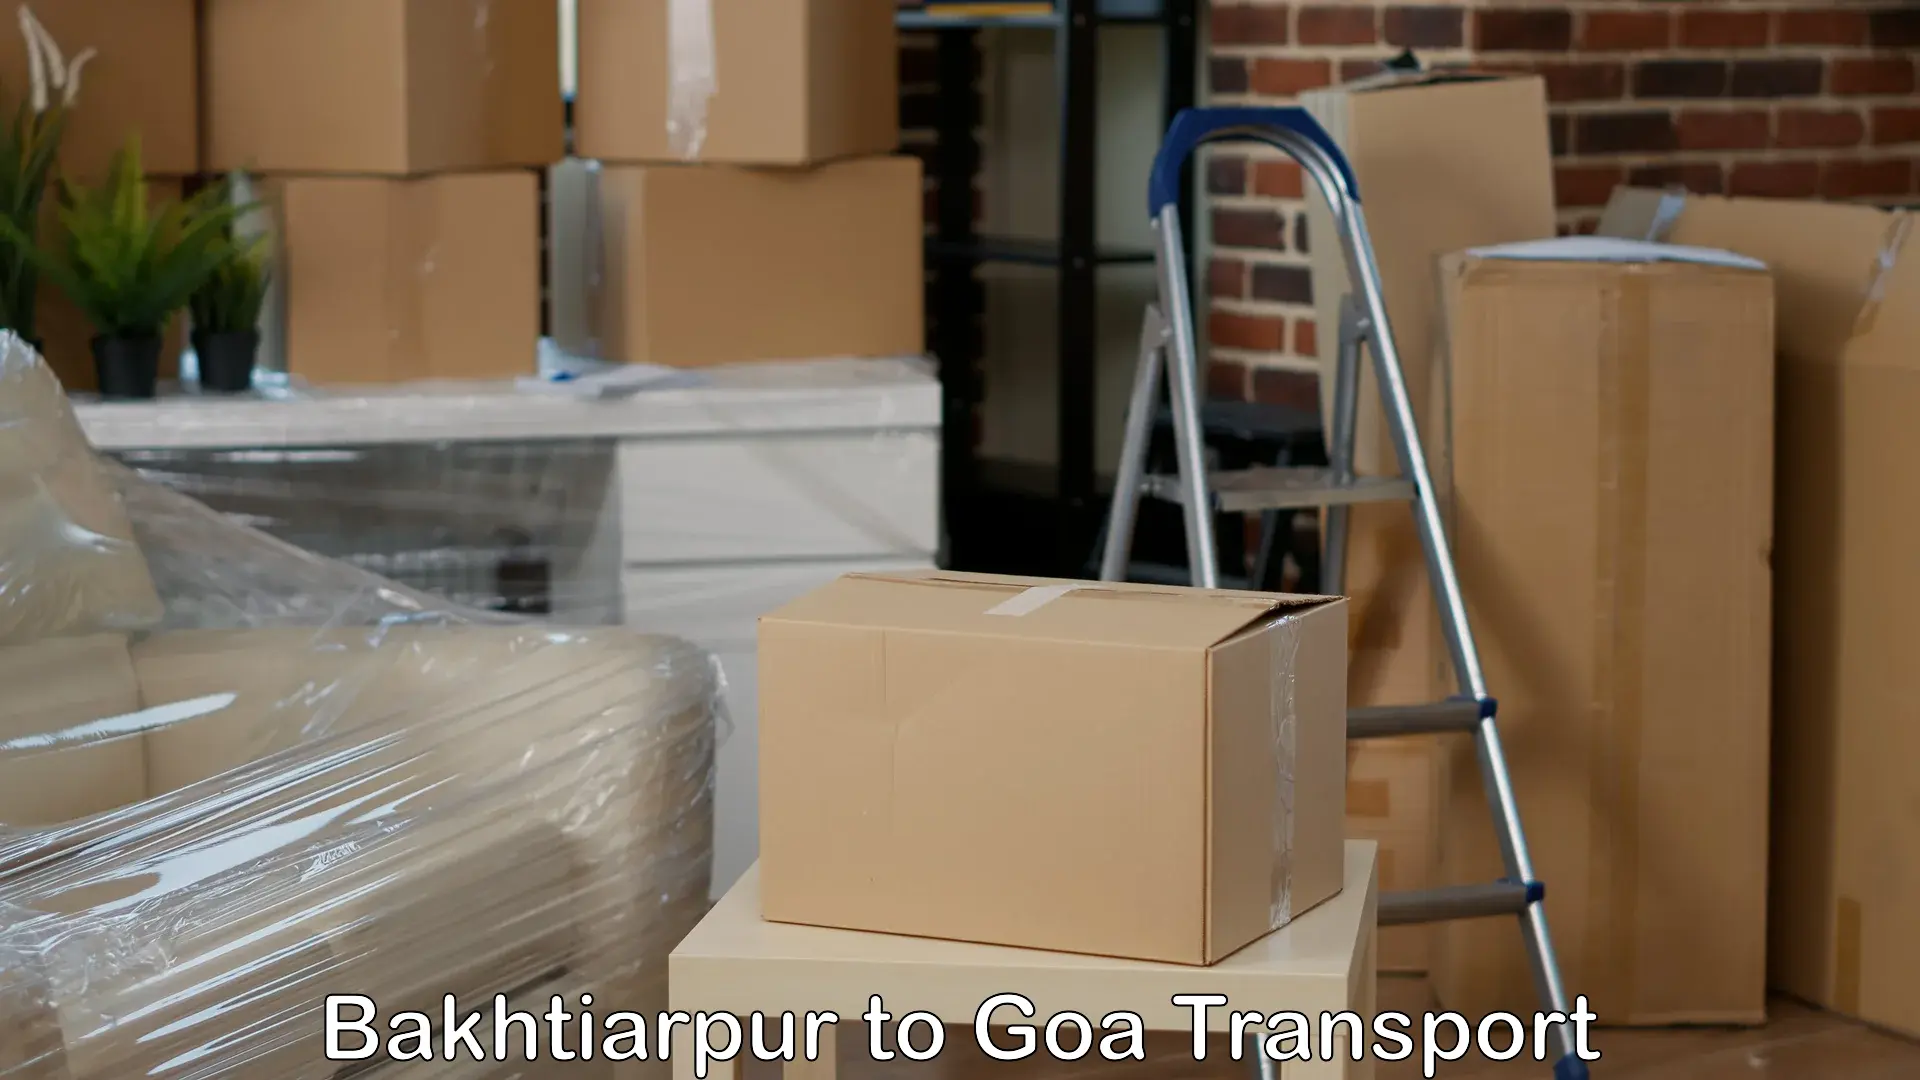 Door to door transport services Bakhtiarpur to Goa University